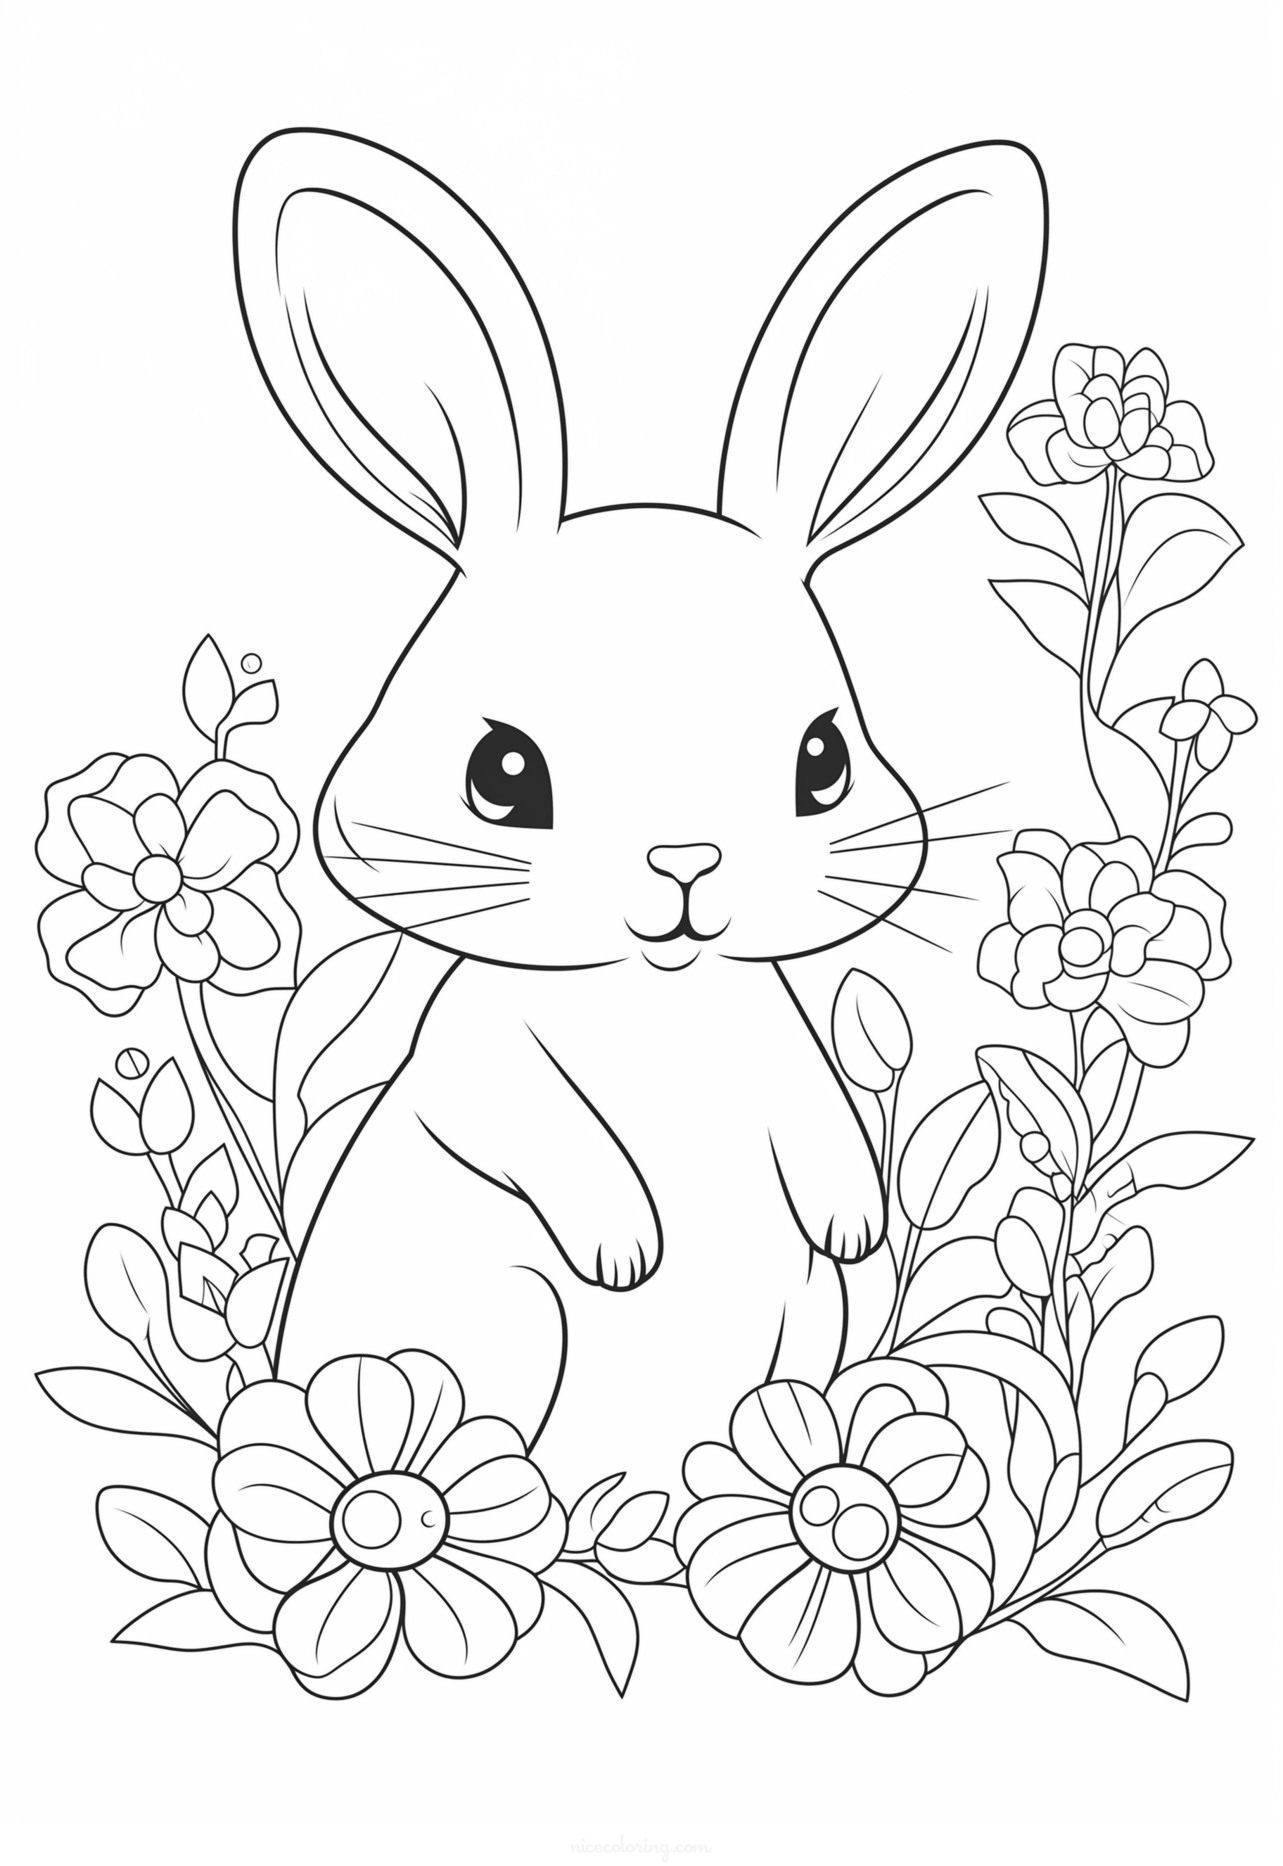 رنگ آمیزی خرگوش در میان گل ها